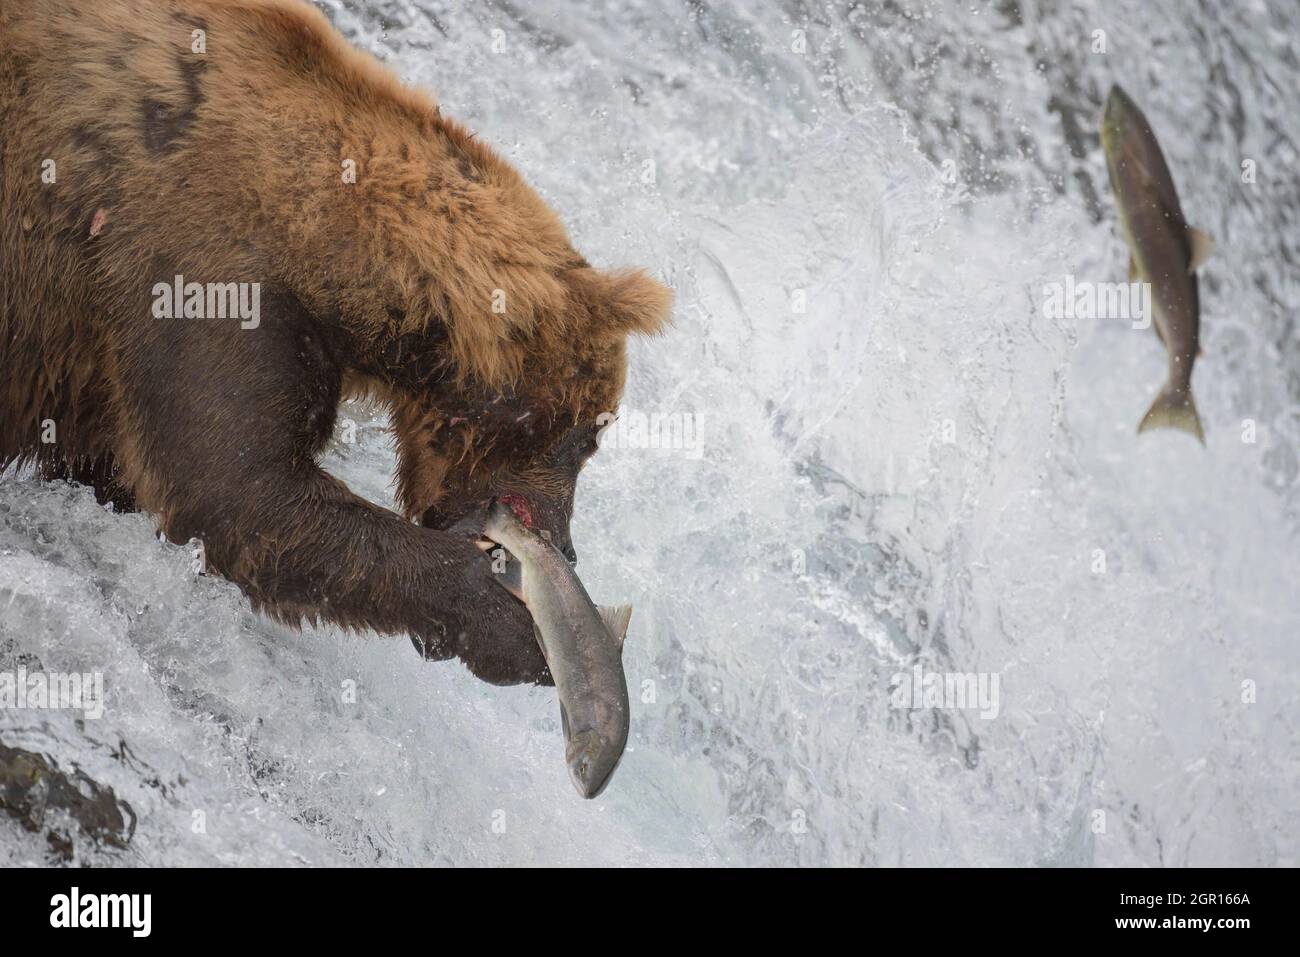 Un ours brun adulte, connu sous le nom de 775, capture un saumon sockeye aux chutes Brooks dans le parc national Katmai et conserve le 29 septembre 2021 près de King Salmon, en Alaska. Le parc organise le concours annuel d'ours gras pour décider quel ours a gagné le plus de poids pendant la saison d'alimentation estivale. Banque D'Images